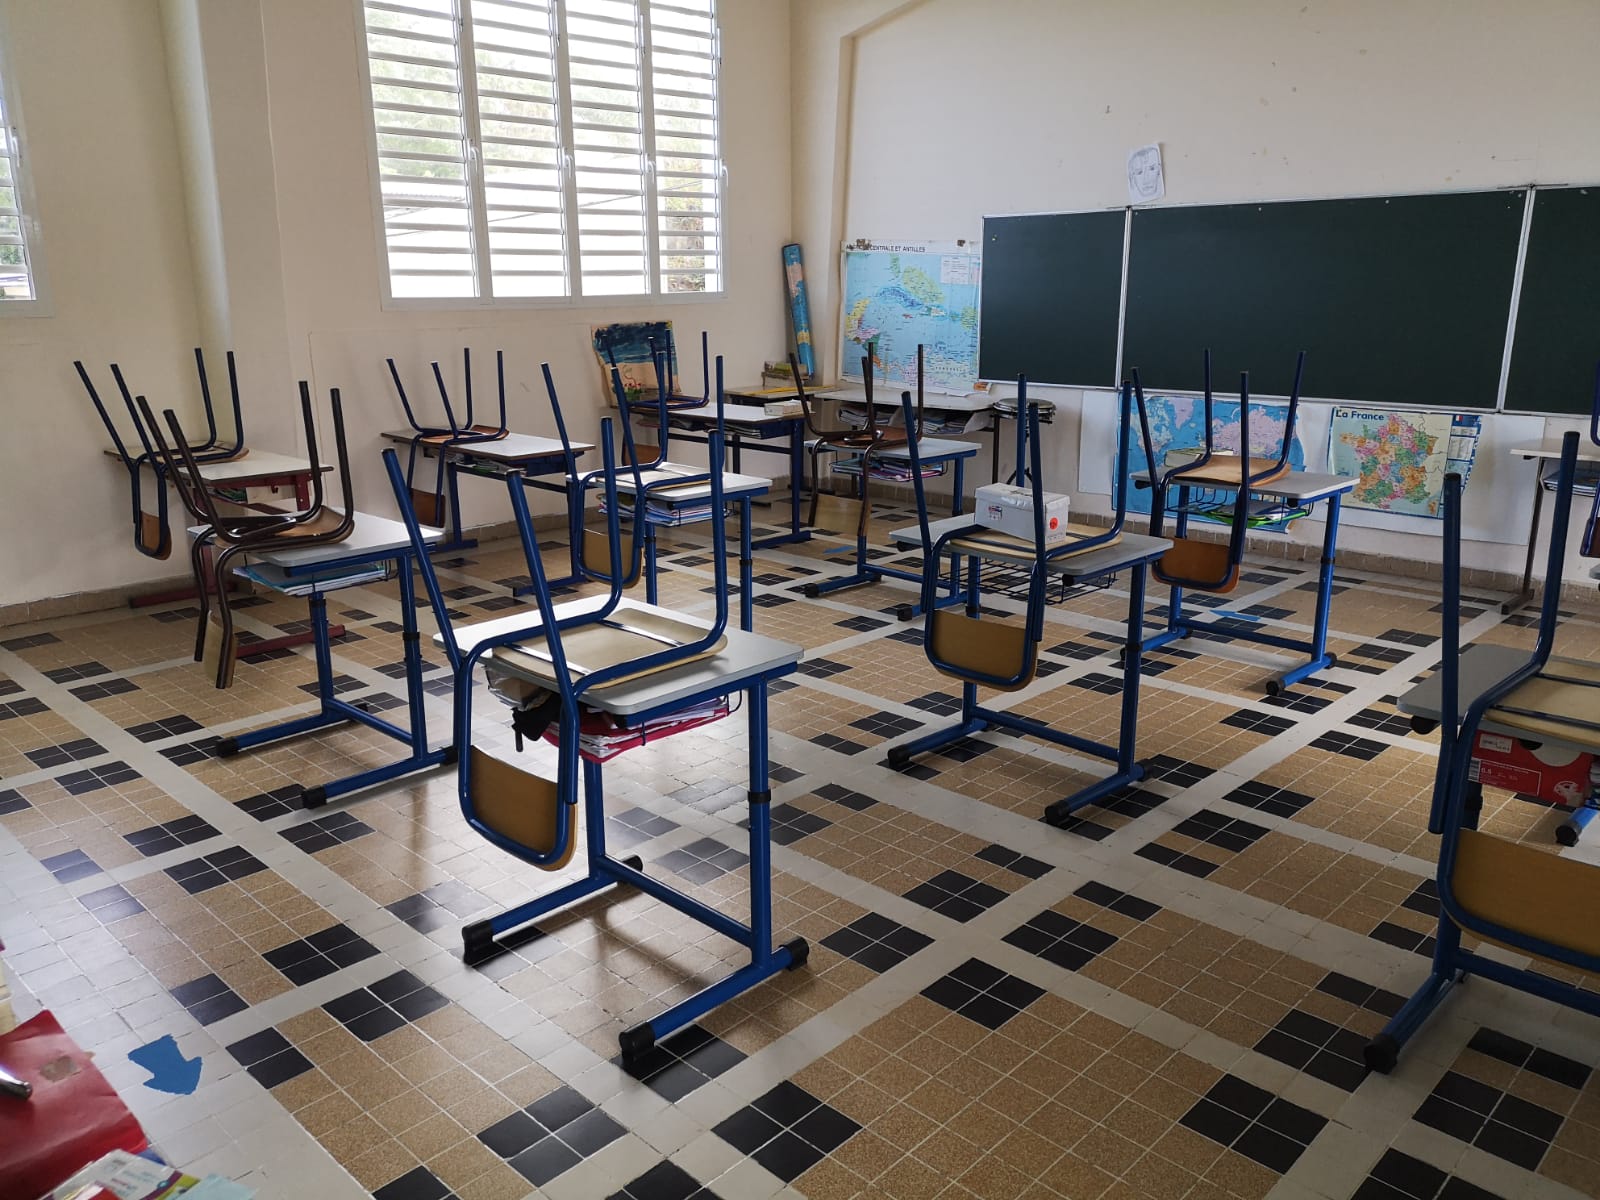     Une école de Saint-François fermée après la détection d'un cas de covid

